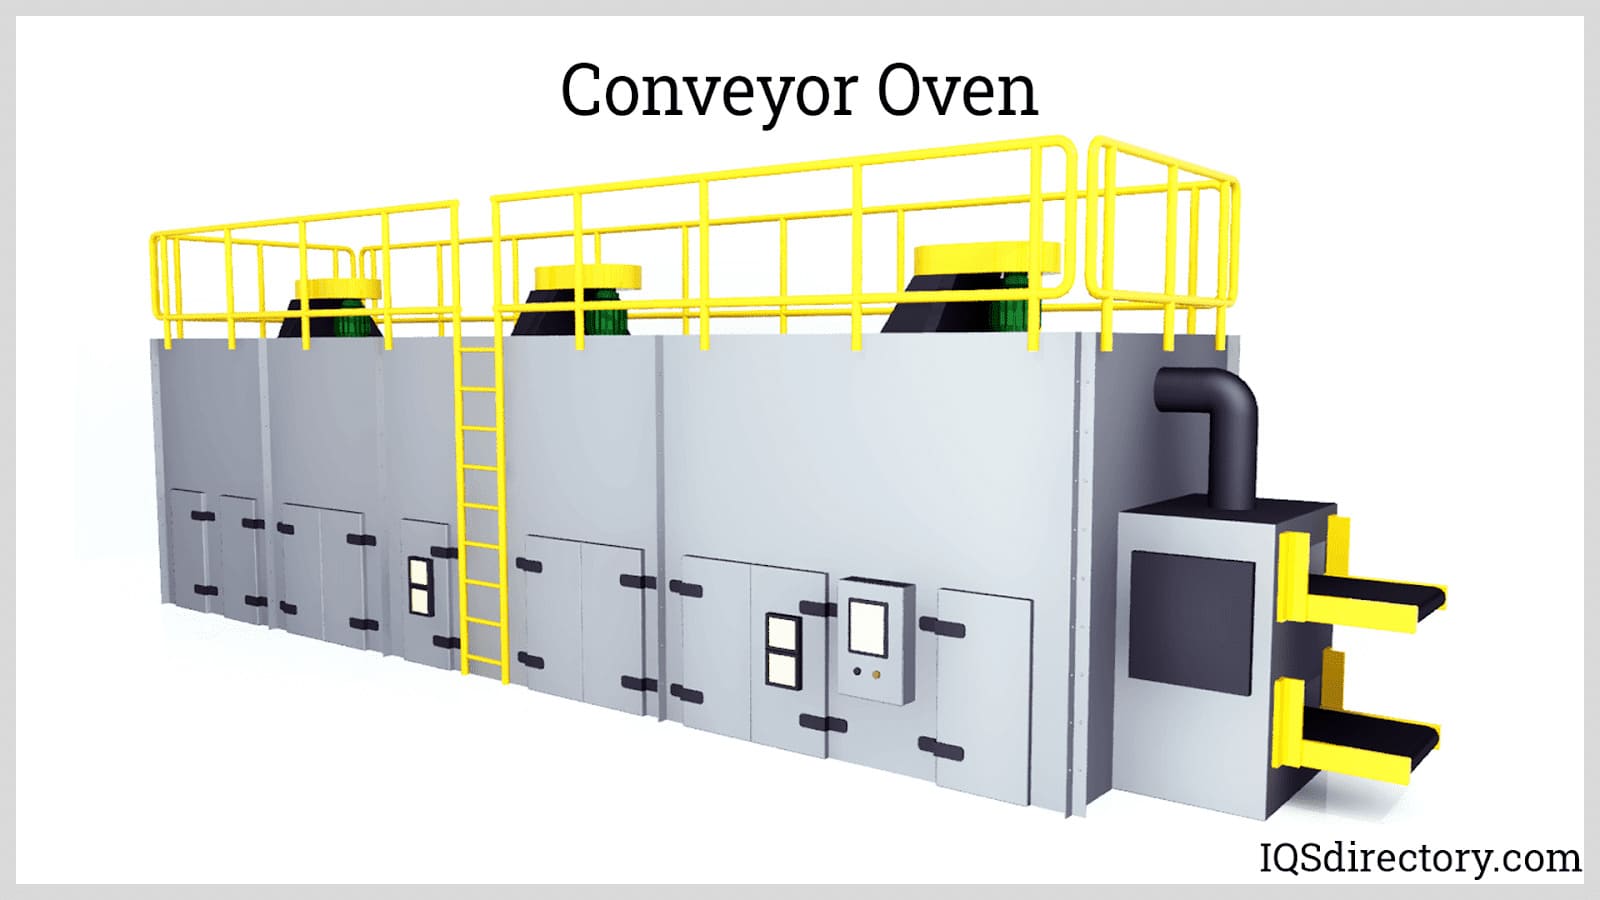 https://www.iqsdirectory.com/articles/industrial-oven/conveyor-oven.jpg